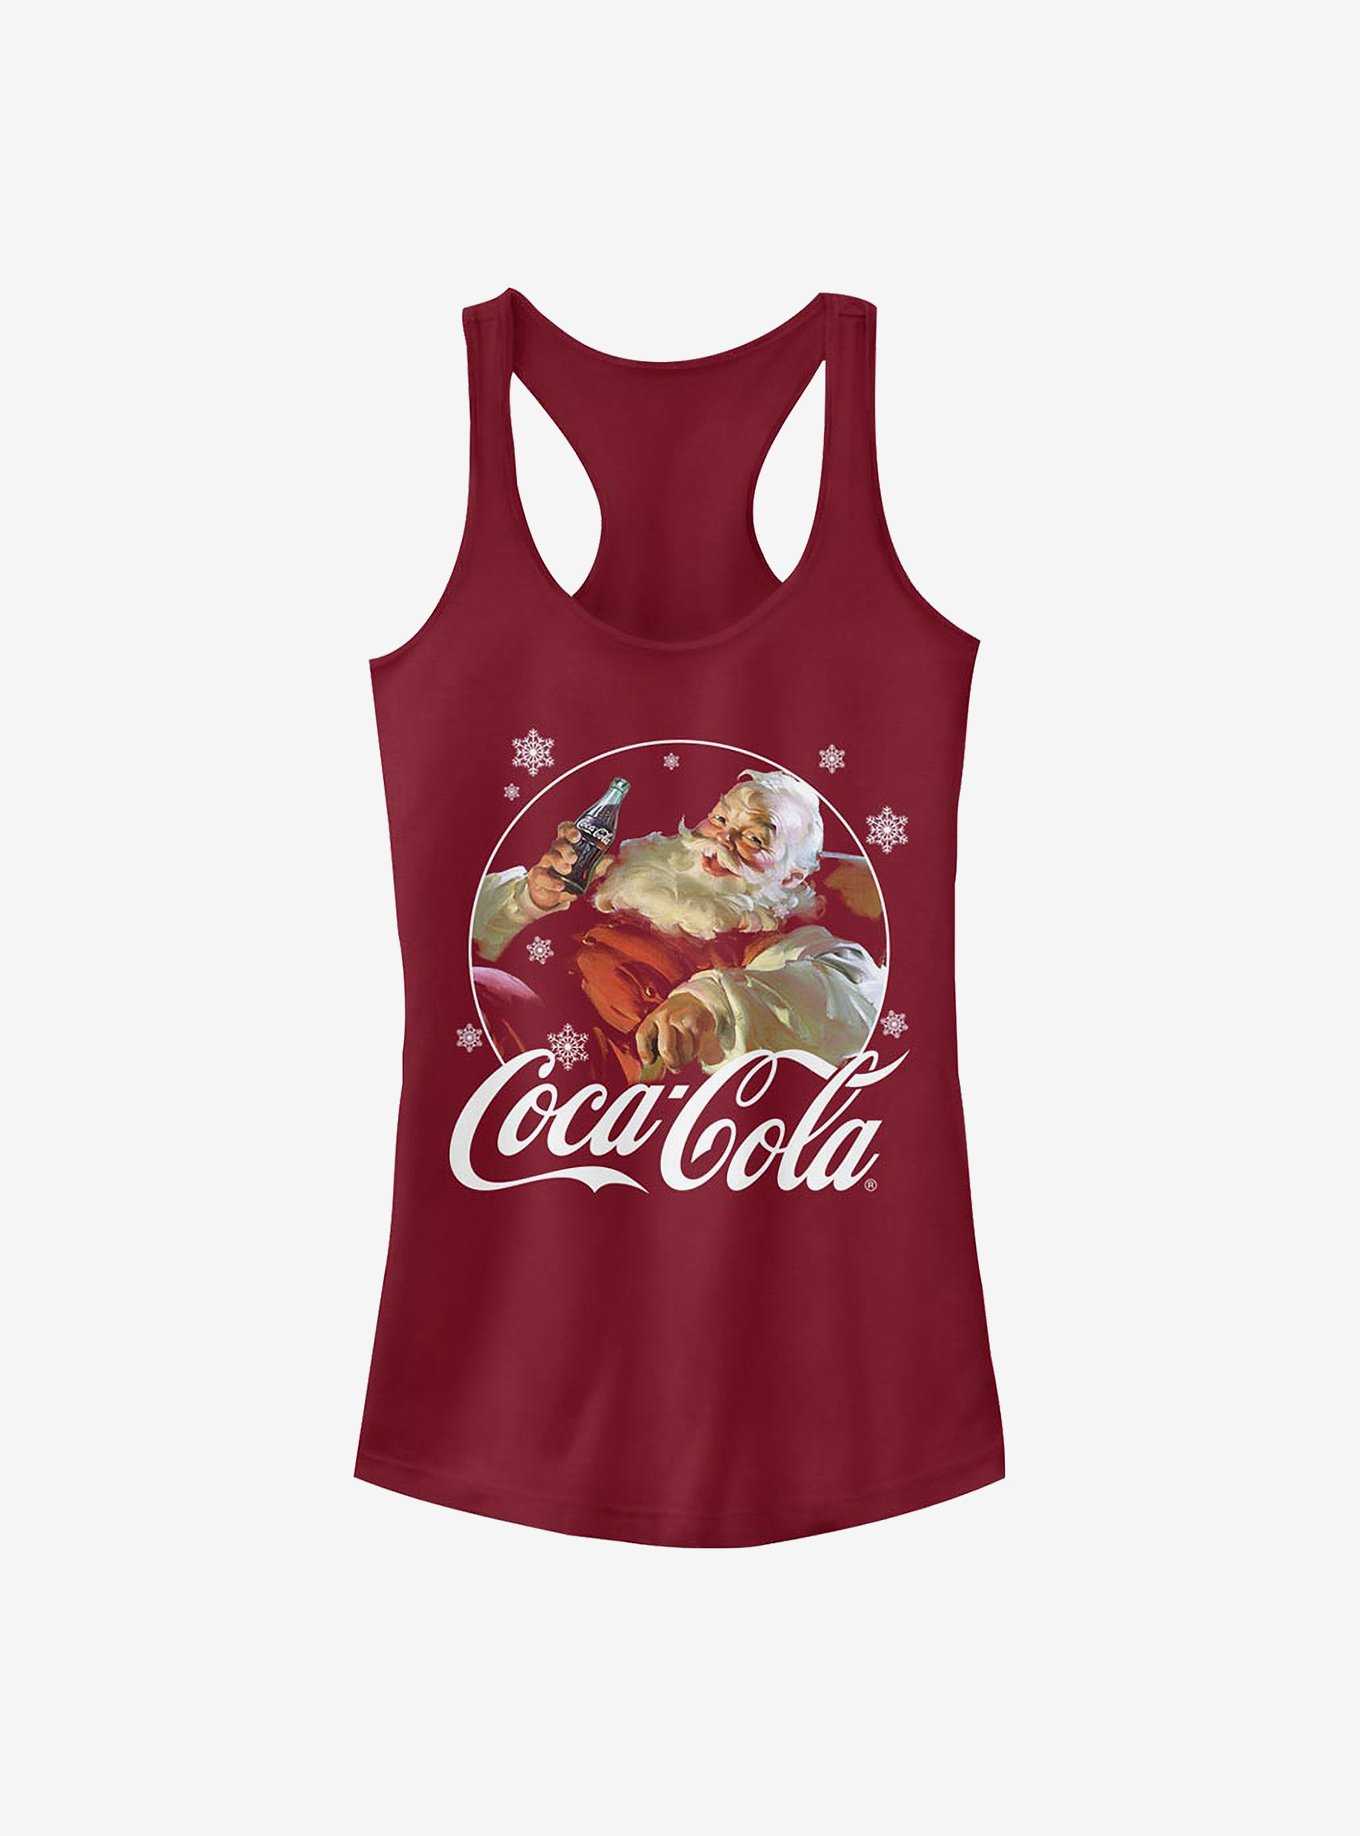 Coke Coca-Cola Santa Girls Tank, , hi-res